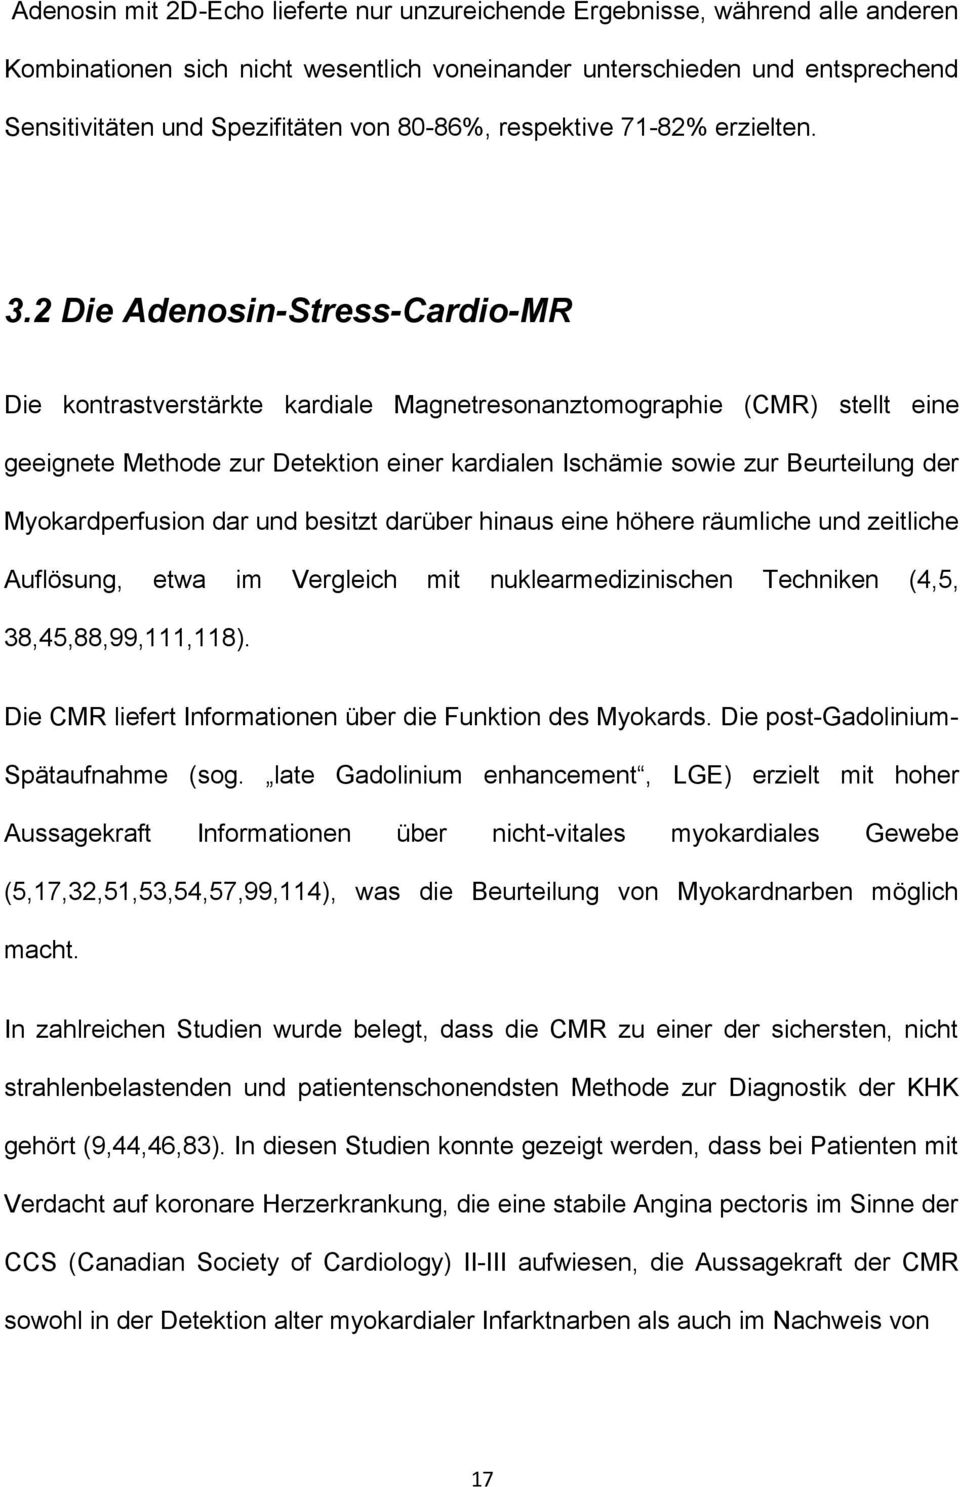 2 Die Adenosin-Stress-Cardio-MR Die kontrastverstärkte kardiale Magnetresonanztomographie (CMR) stellt eine geeignete Methode zur Detektion einer kardialen Ischämie sowie zur Beurteilung der